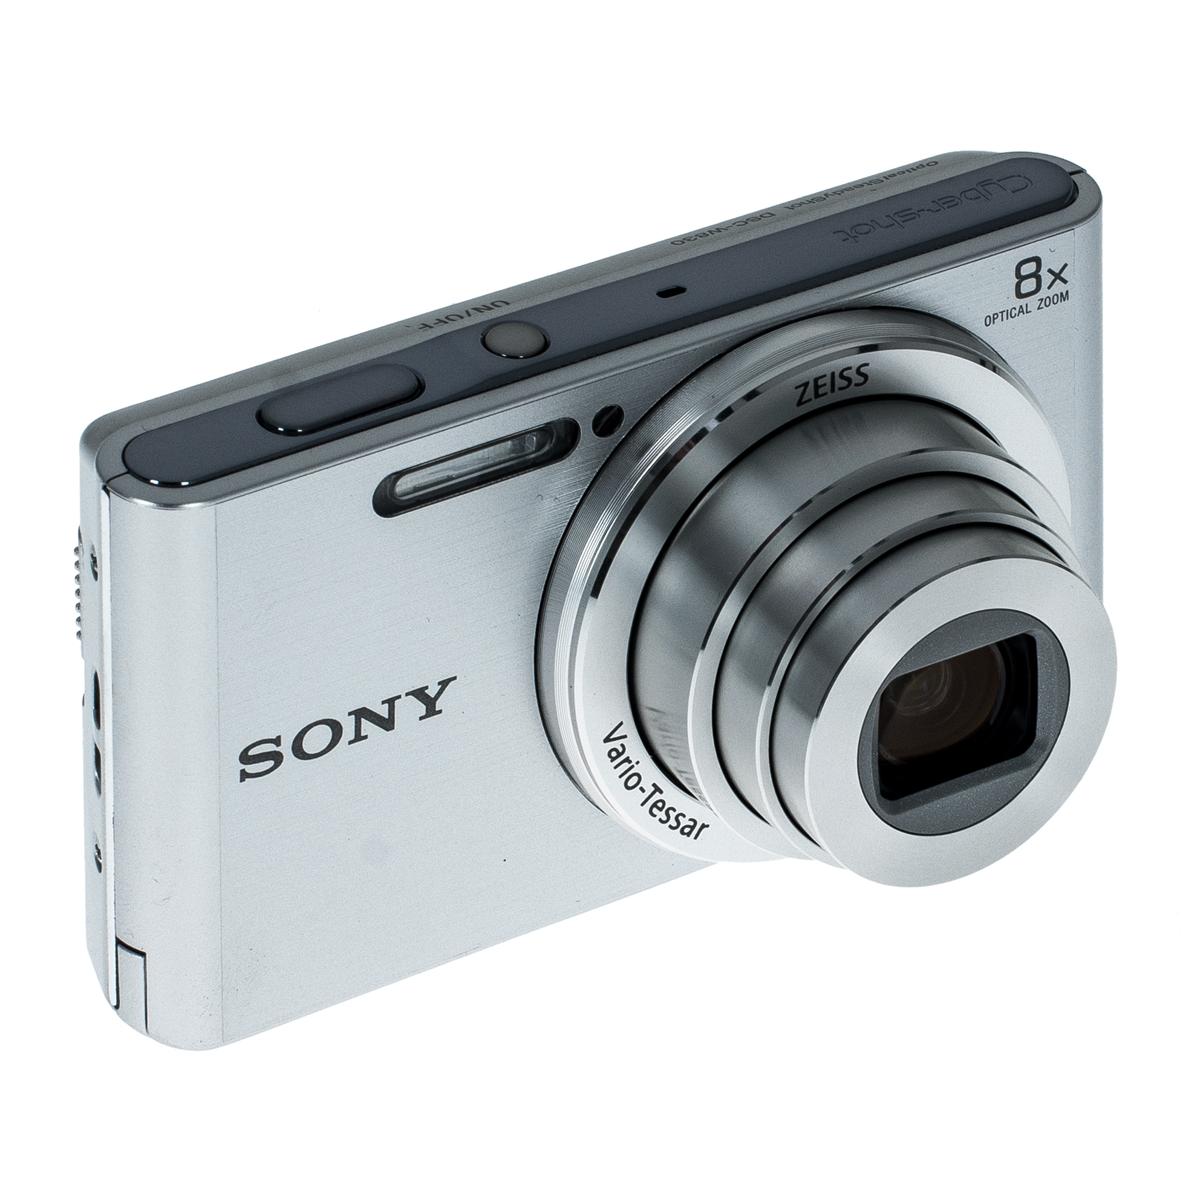 Sony Cyber-shot DSC-w830.